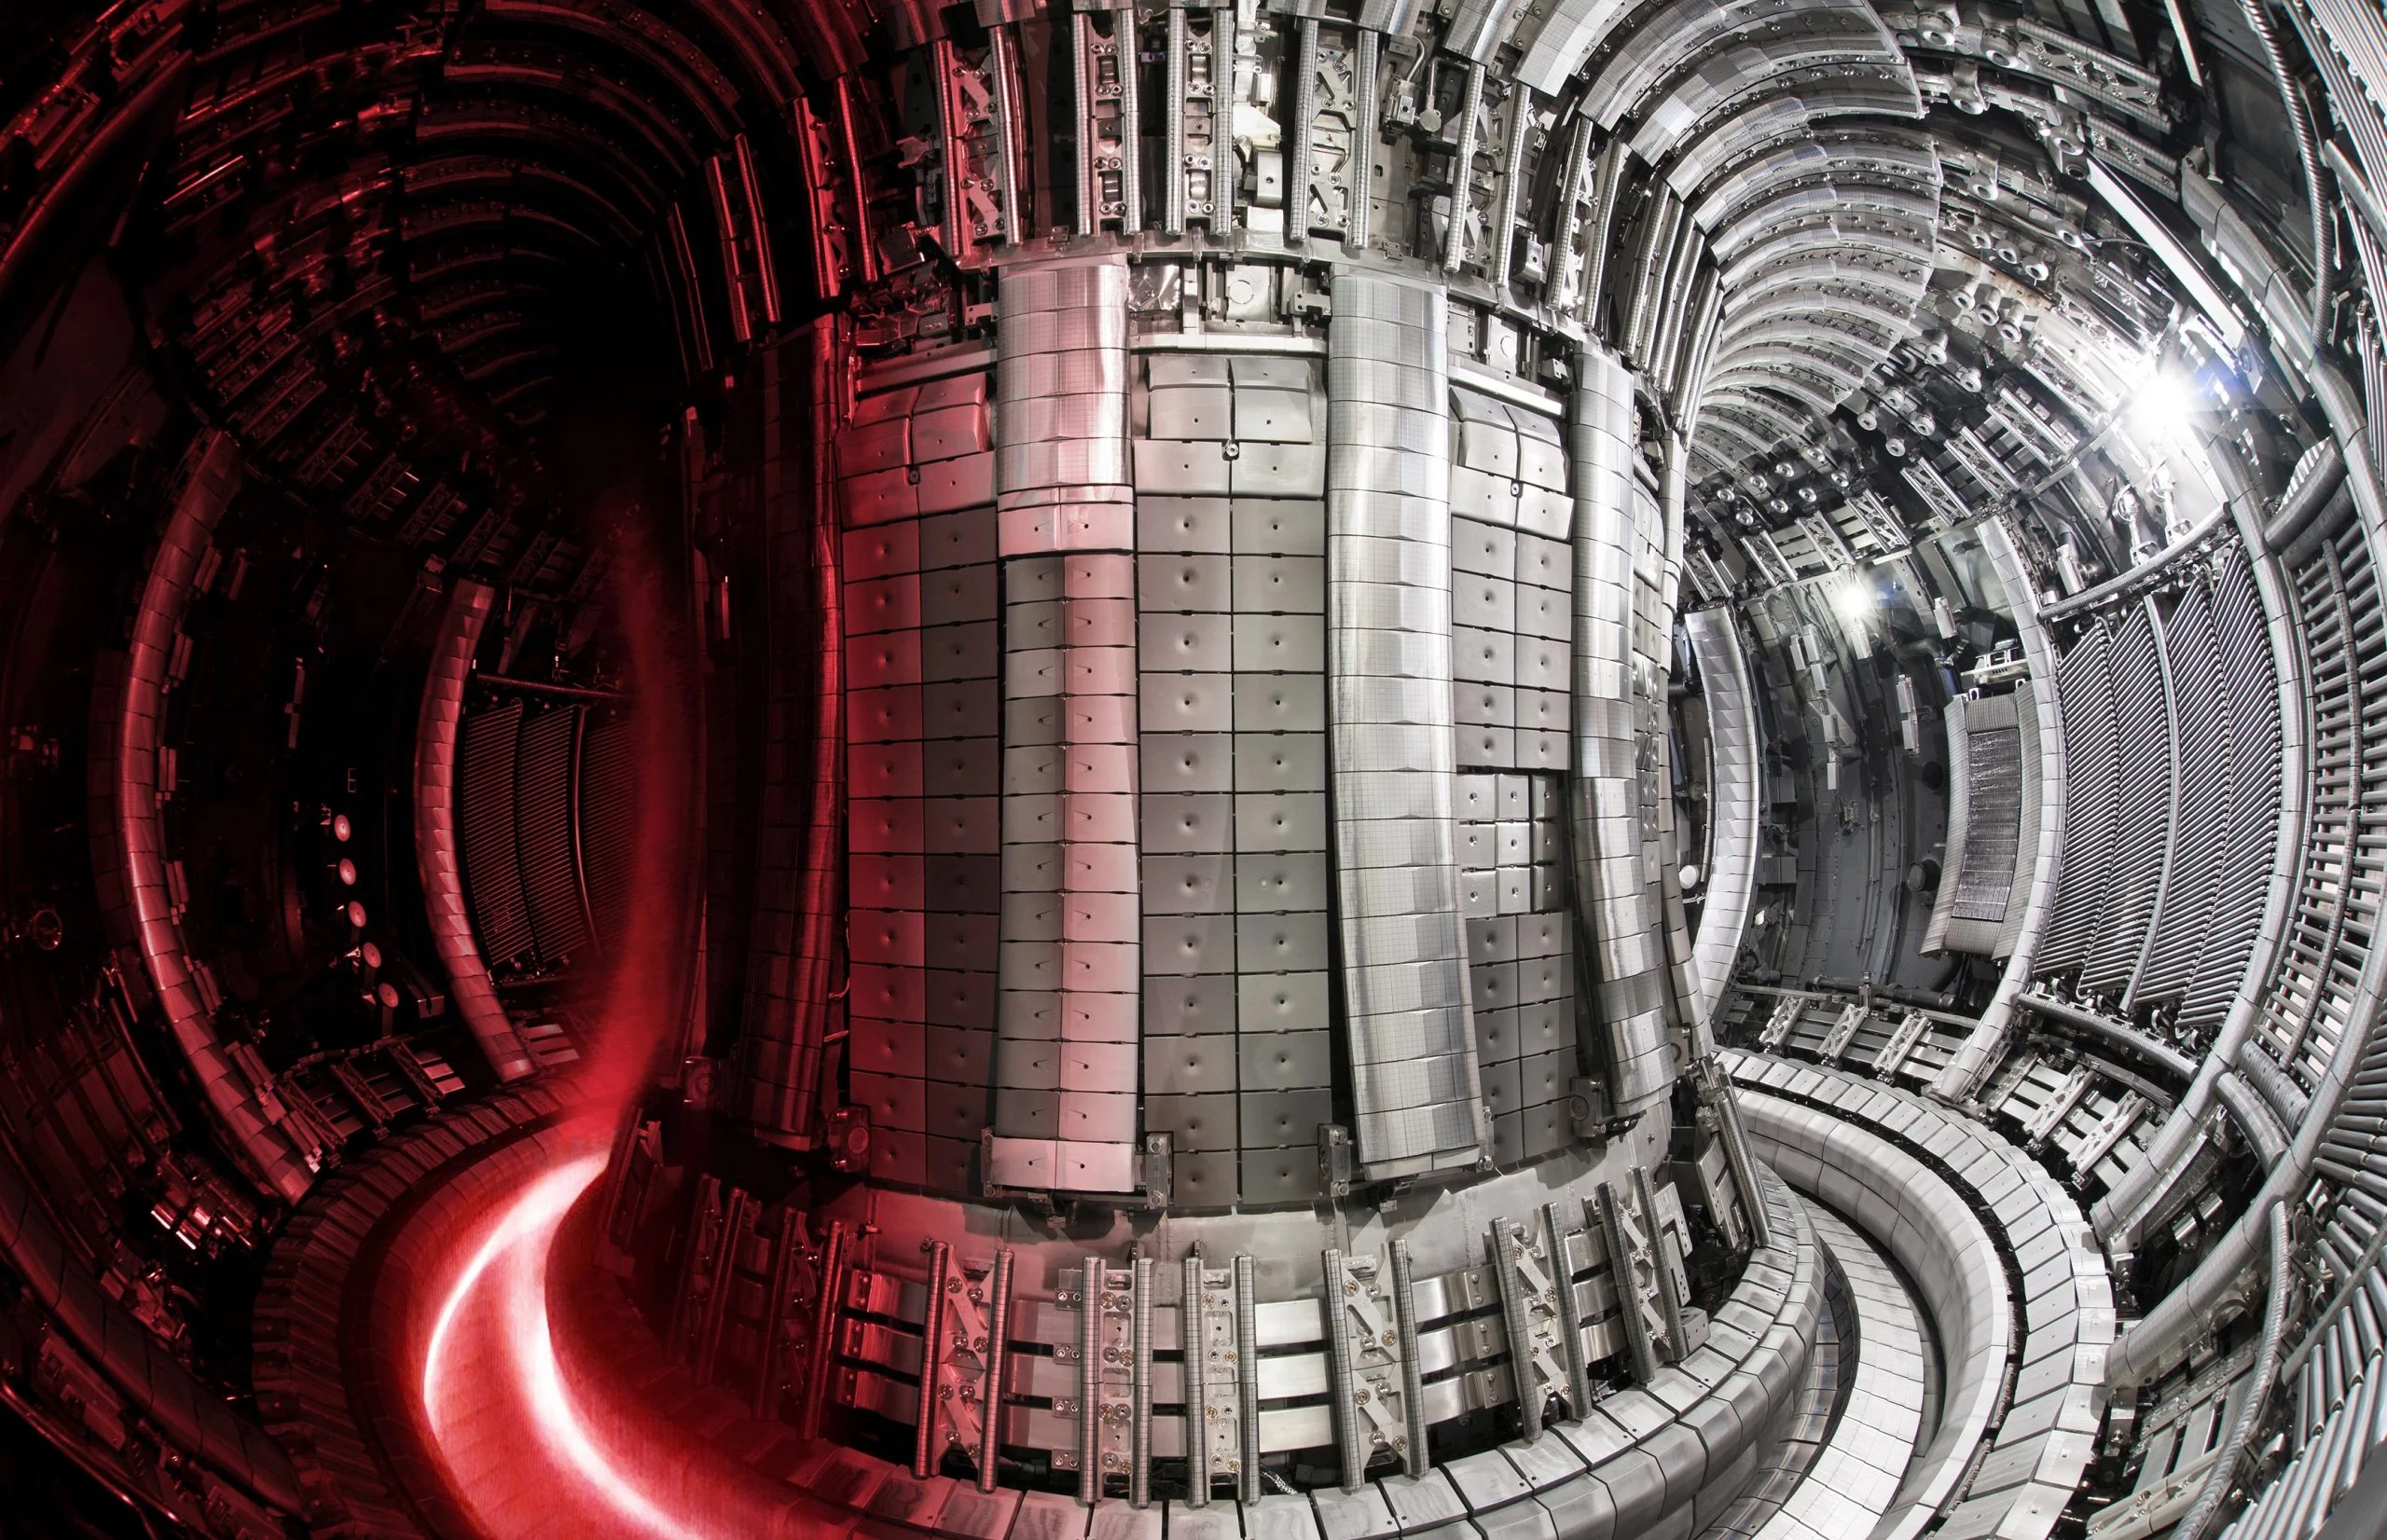 Fuziunea nucleara se apropie de realitate datorita unui nou reactor de tungsten